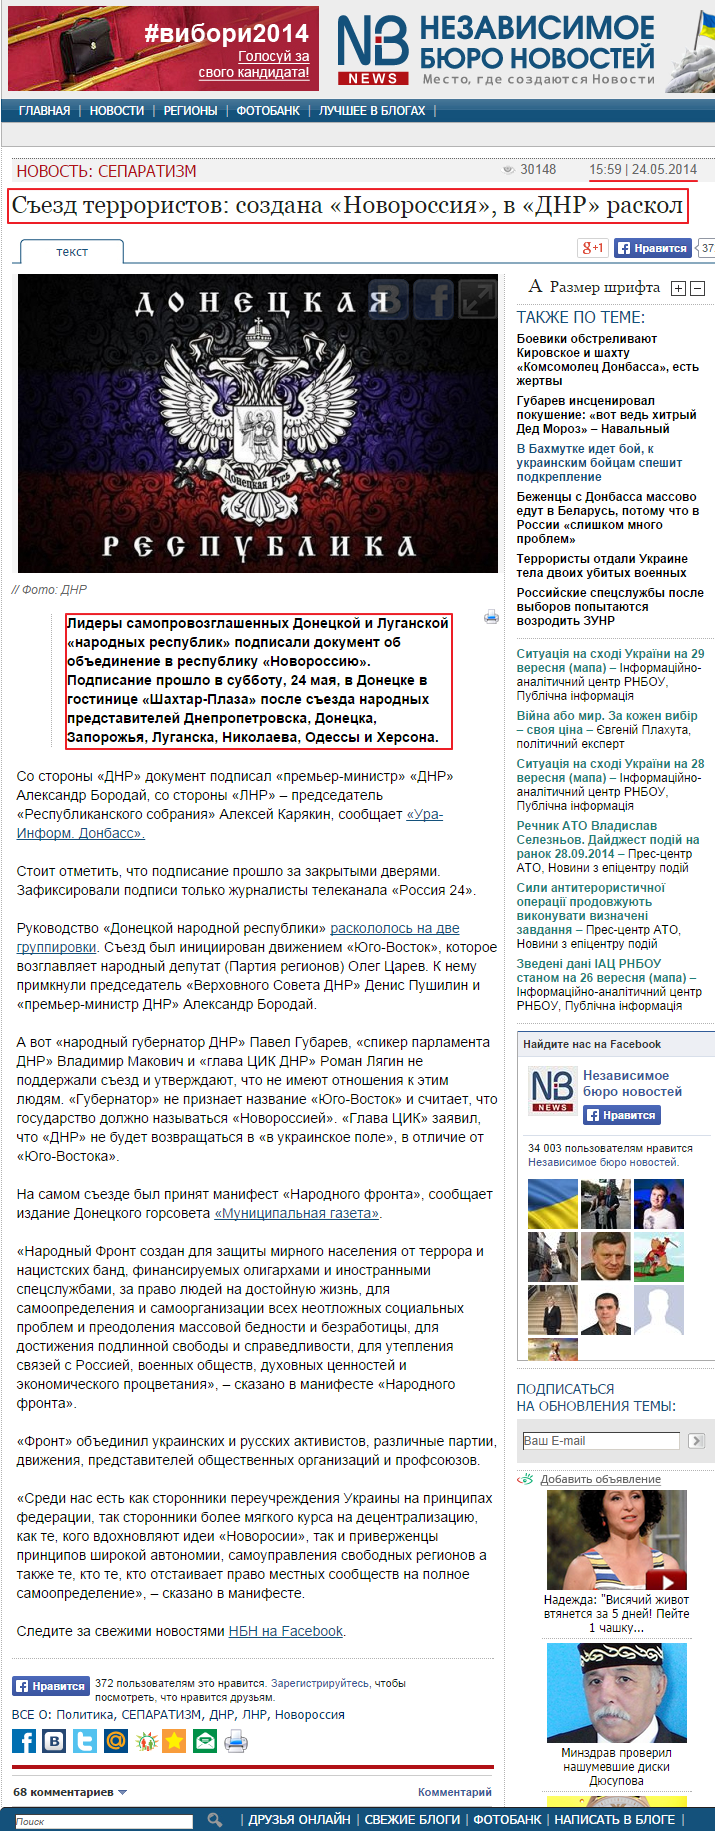 http://nbnews.com.ua/ua/news/122164/